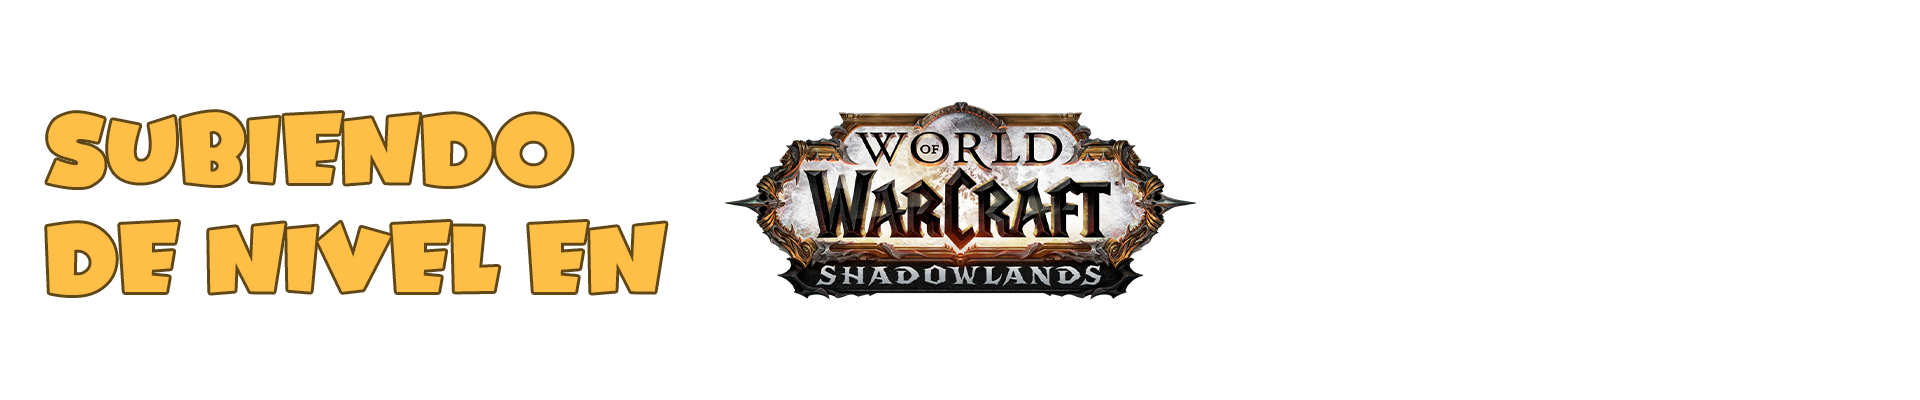 Subiendo de Nivel en World of Warcraft Shadowlands